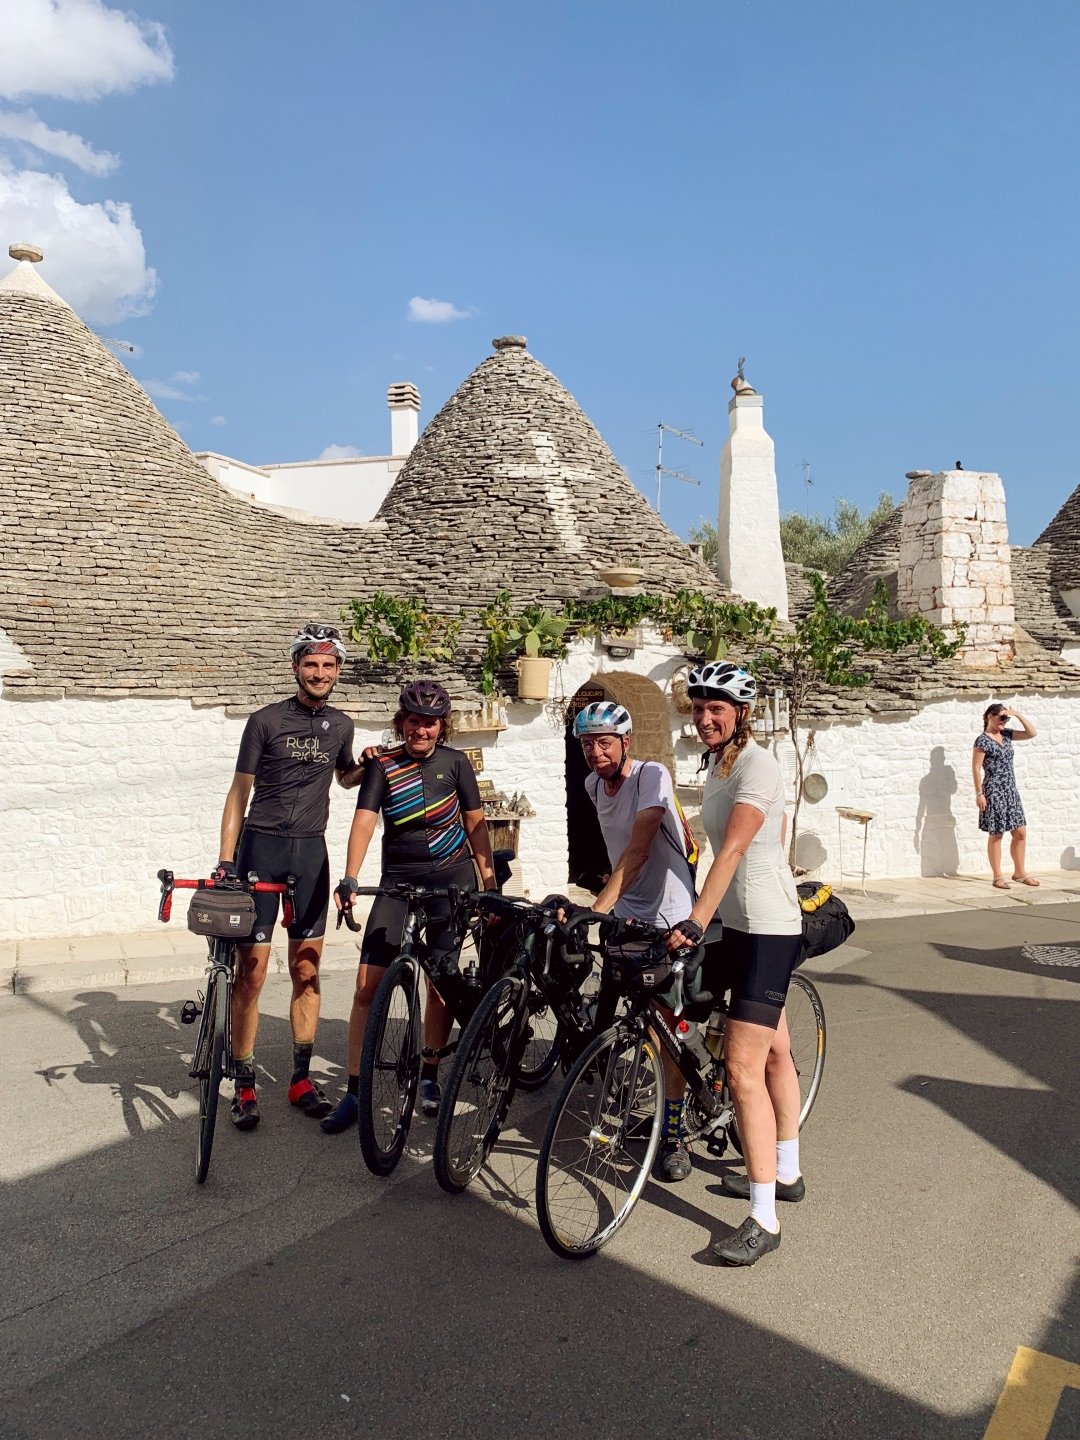 Groep fietsers van Rudi Rides voor trulli in hoofdstad van trulli Alberobello